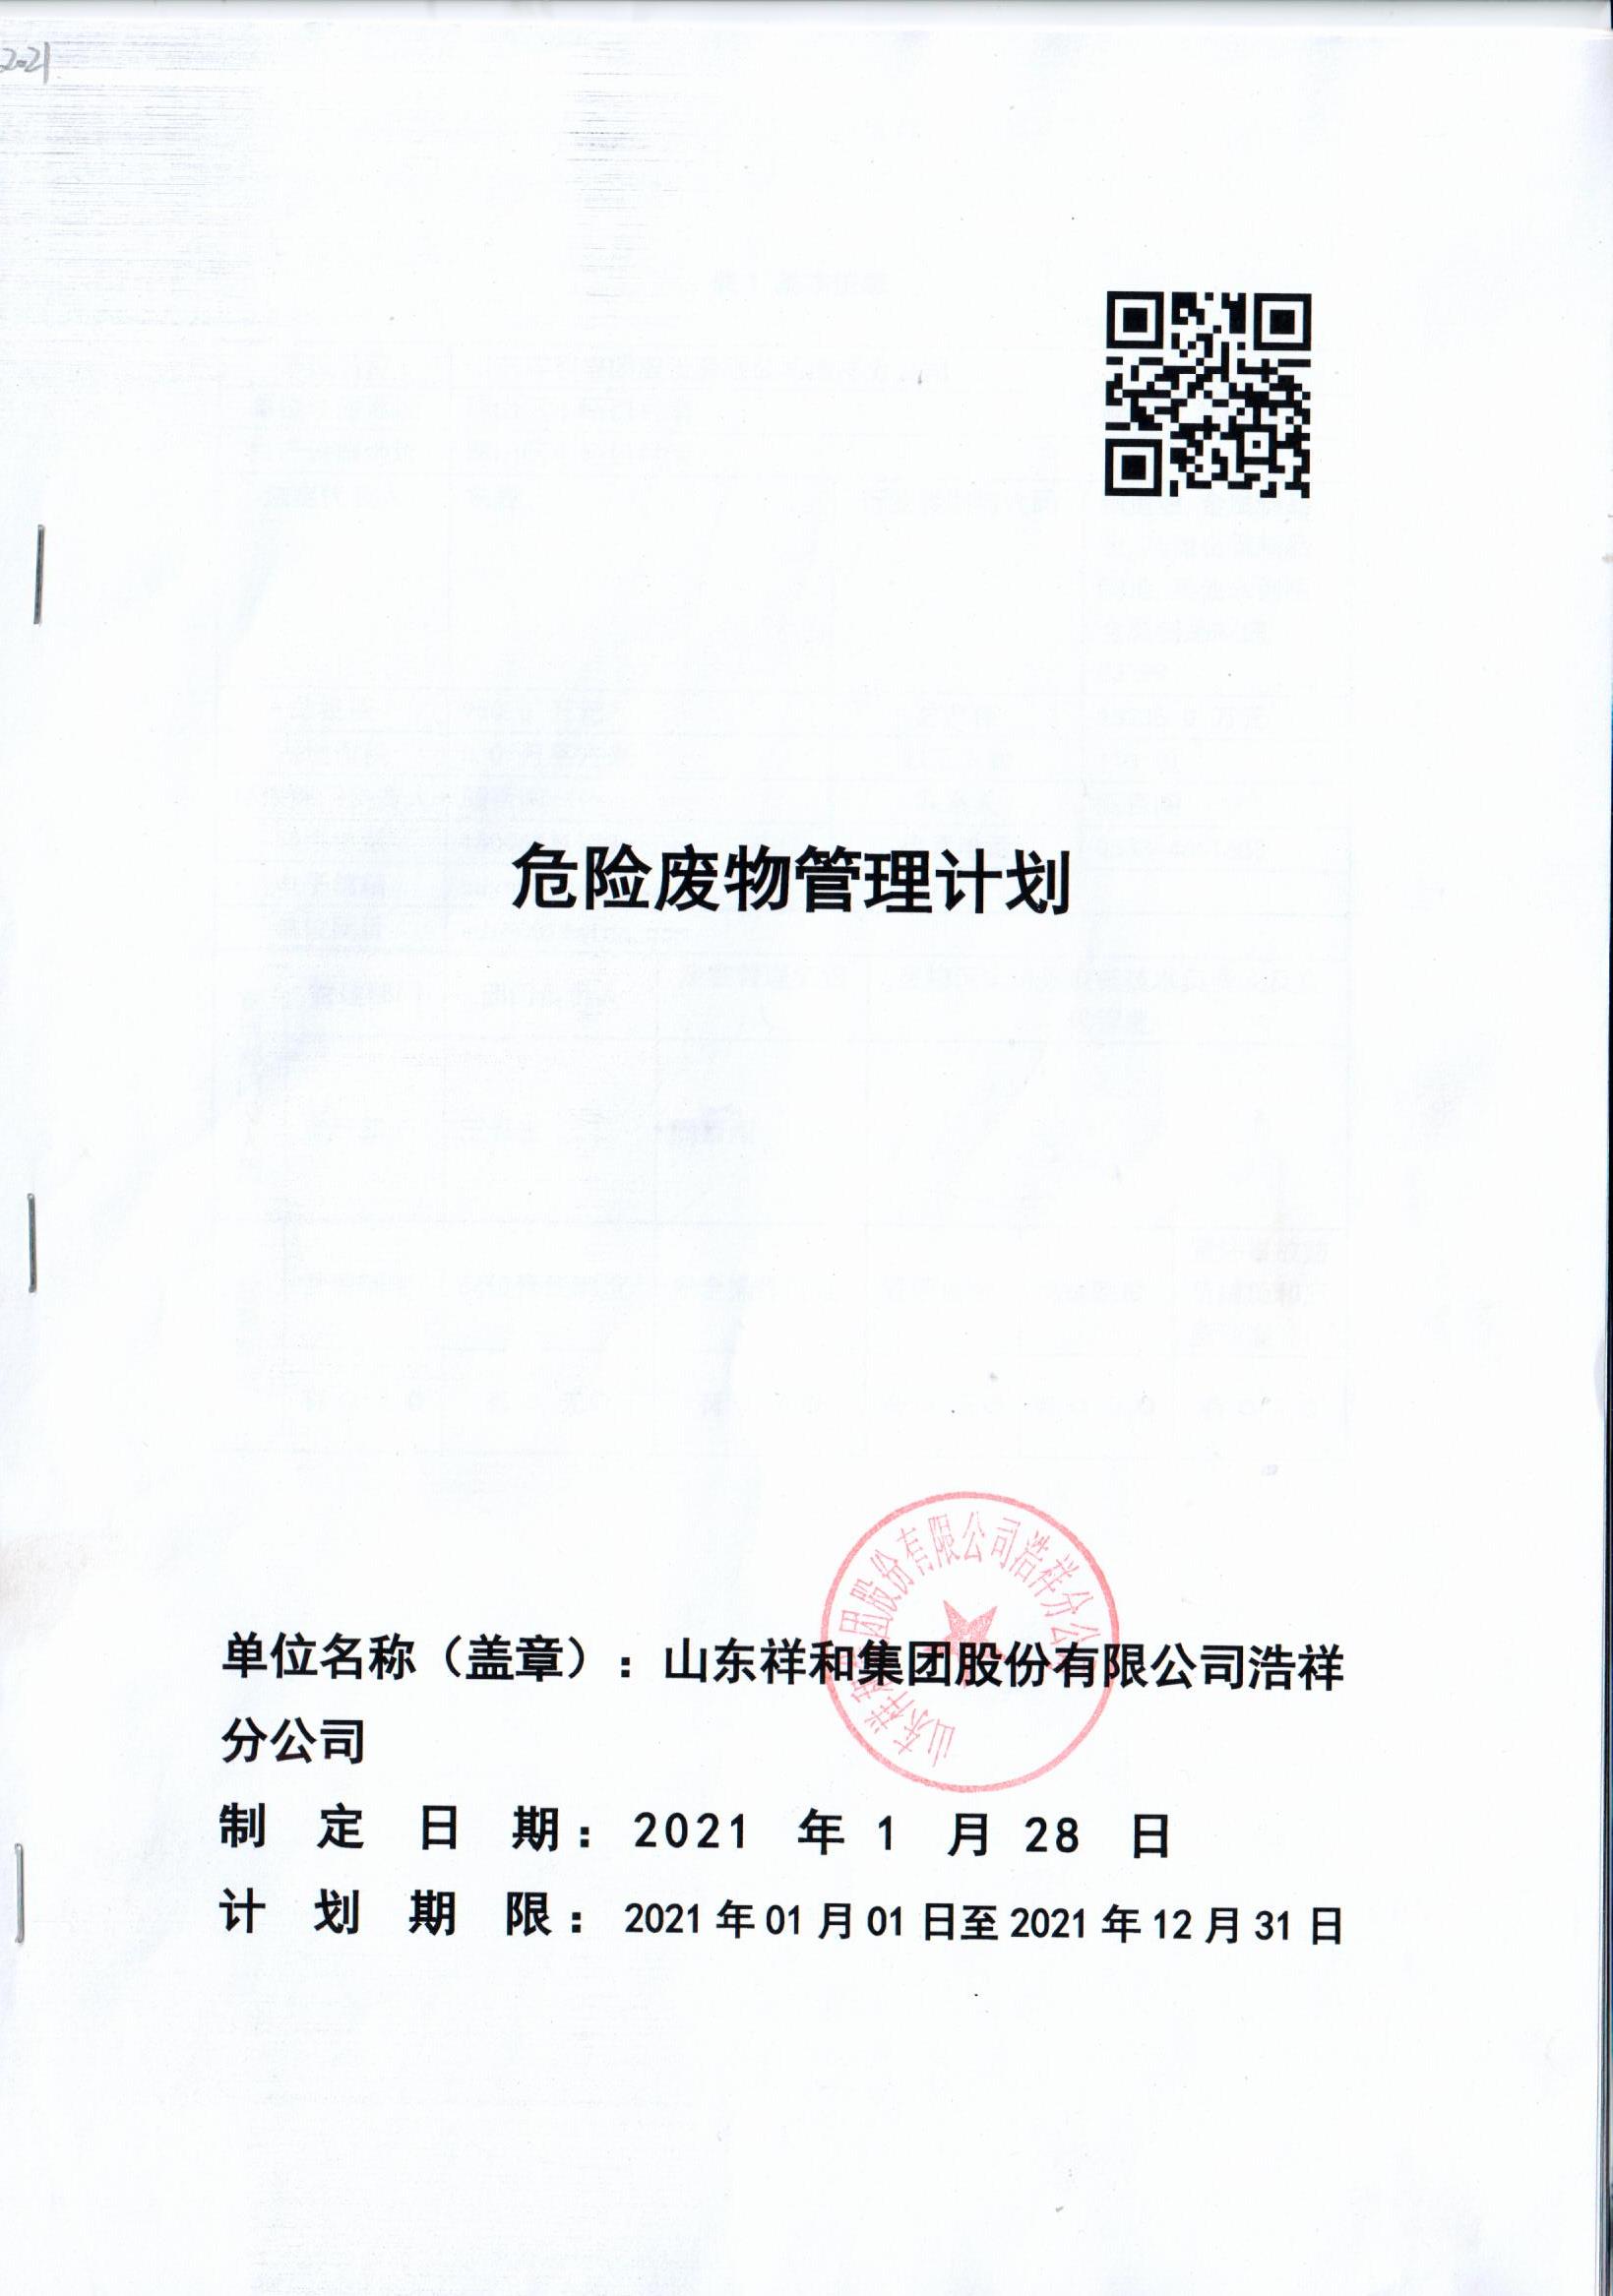 九州平台官方网站浩祥分公司2021年度危险废物管理信息公开